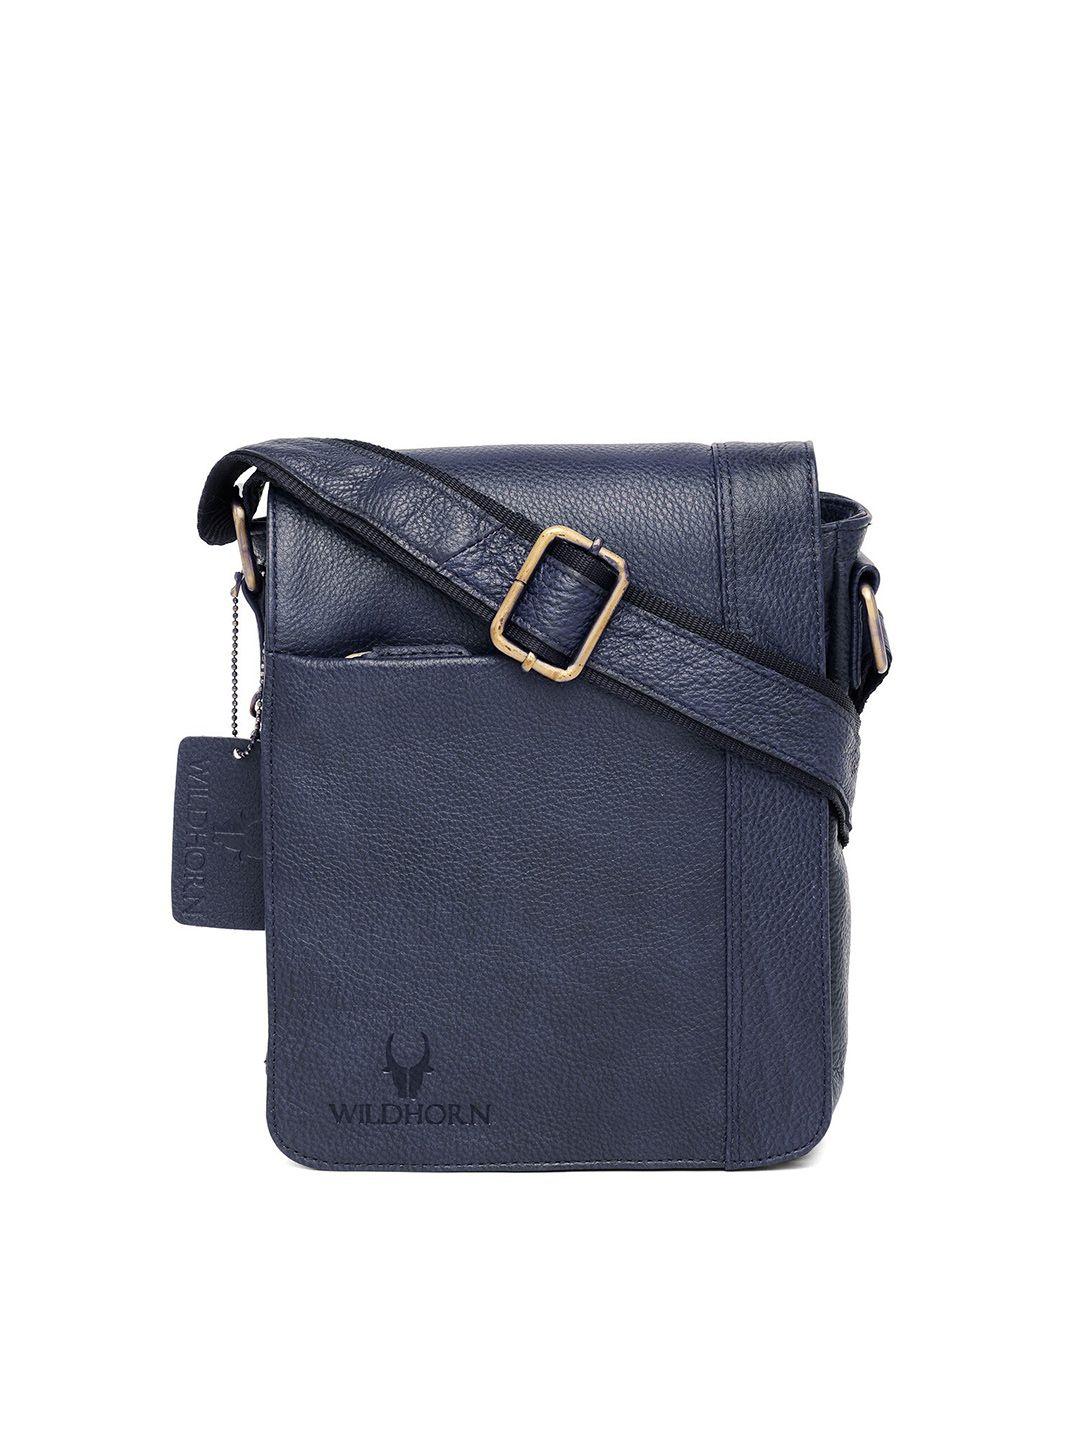 wildhorn-men-blue-textured-leather-messenger-bag